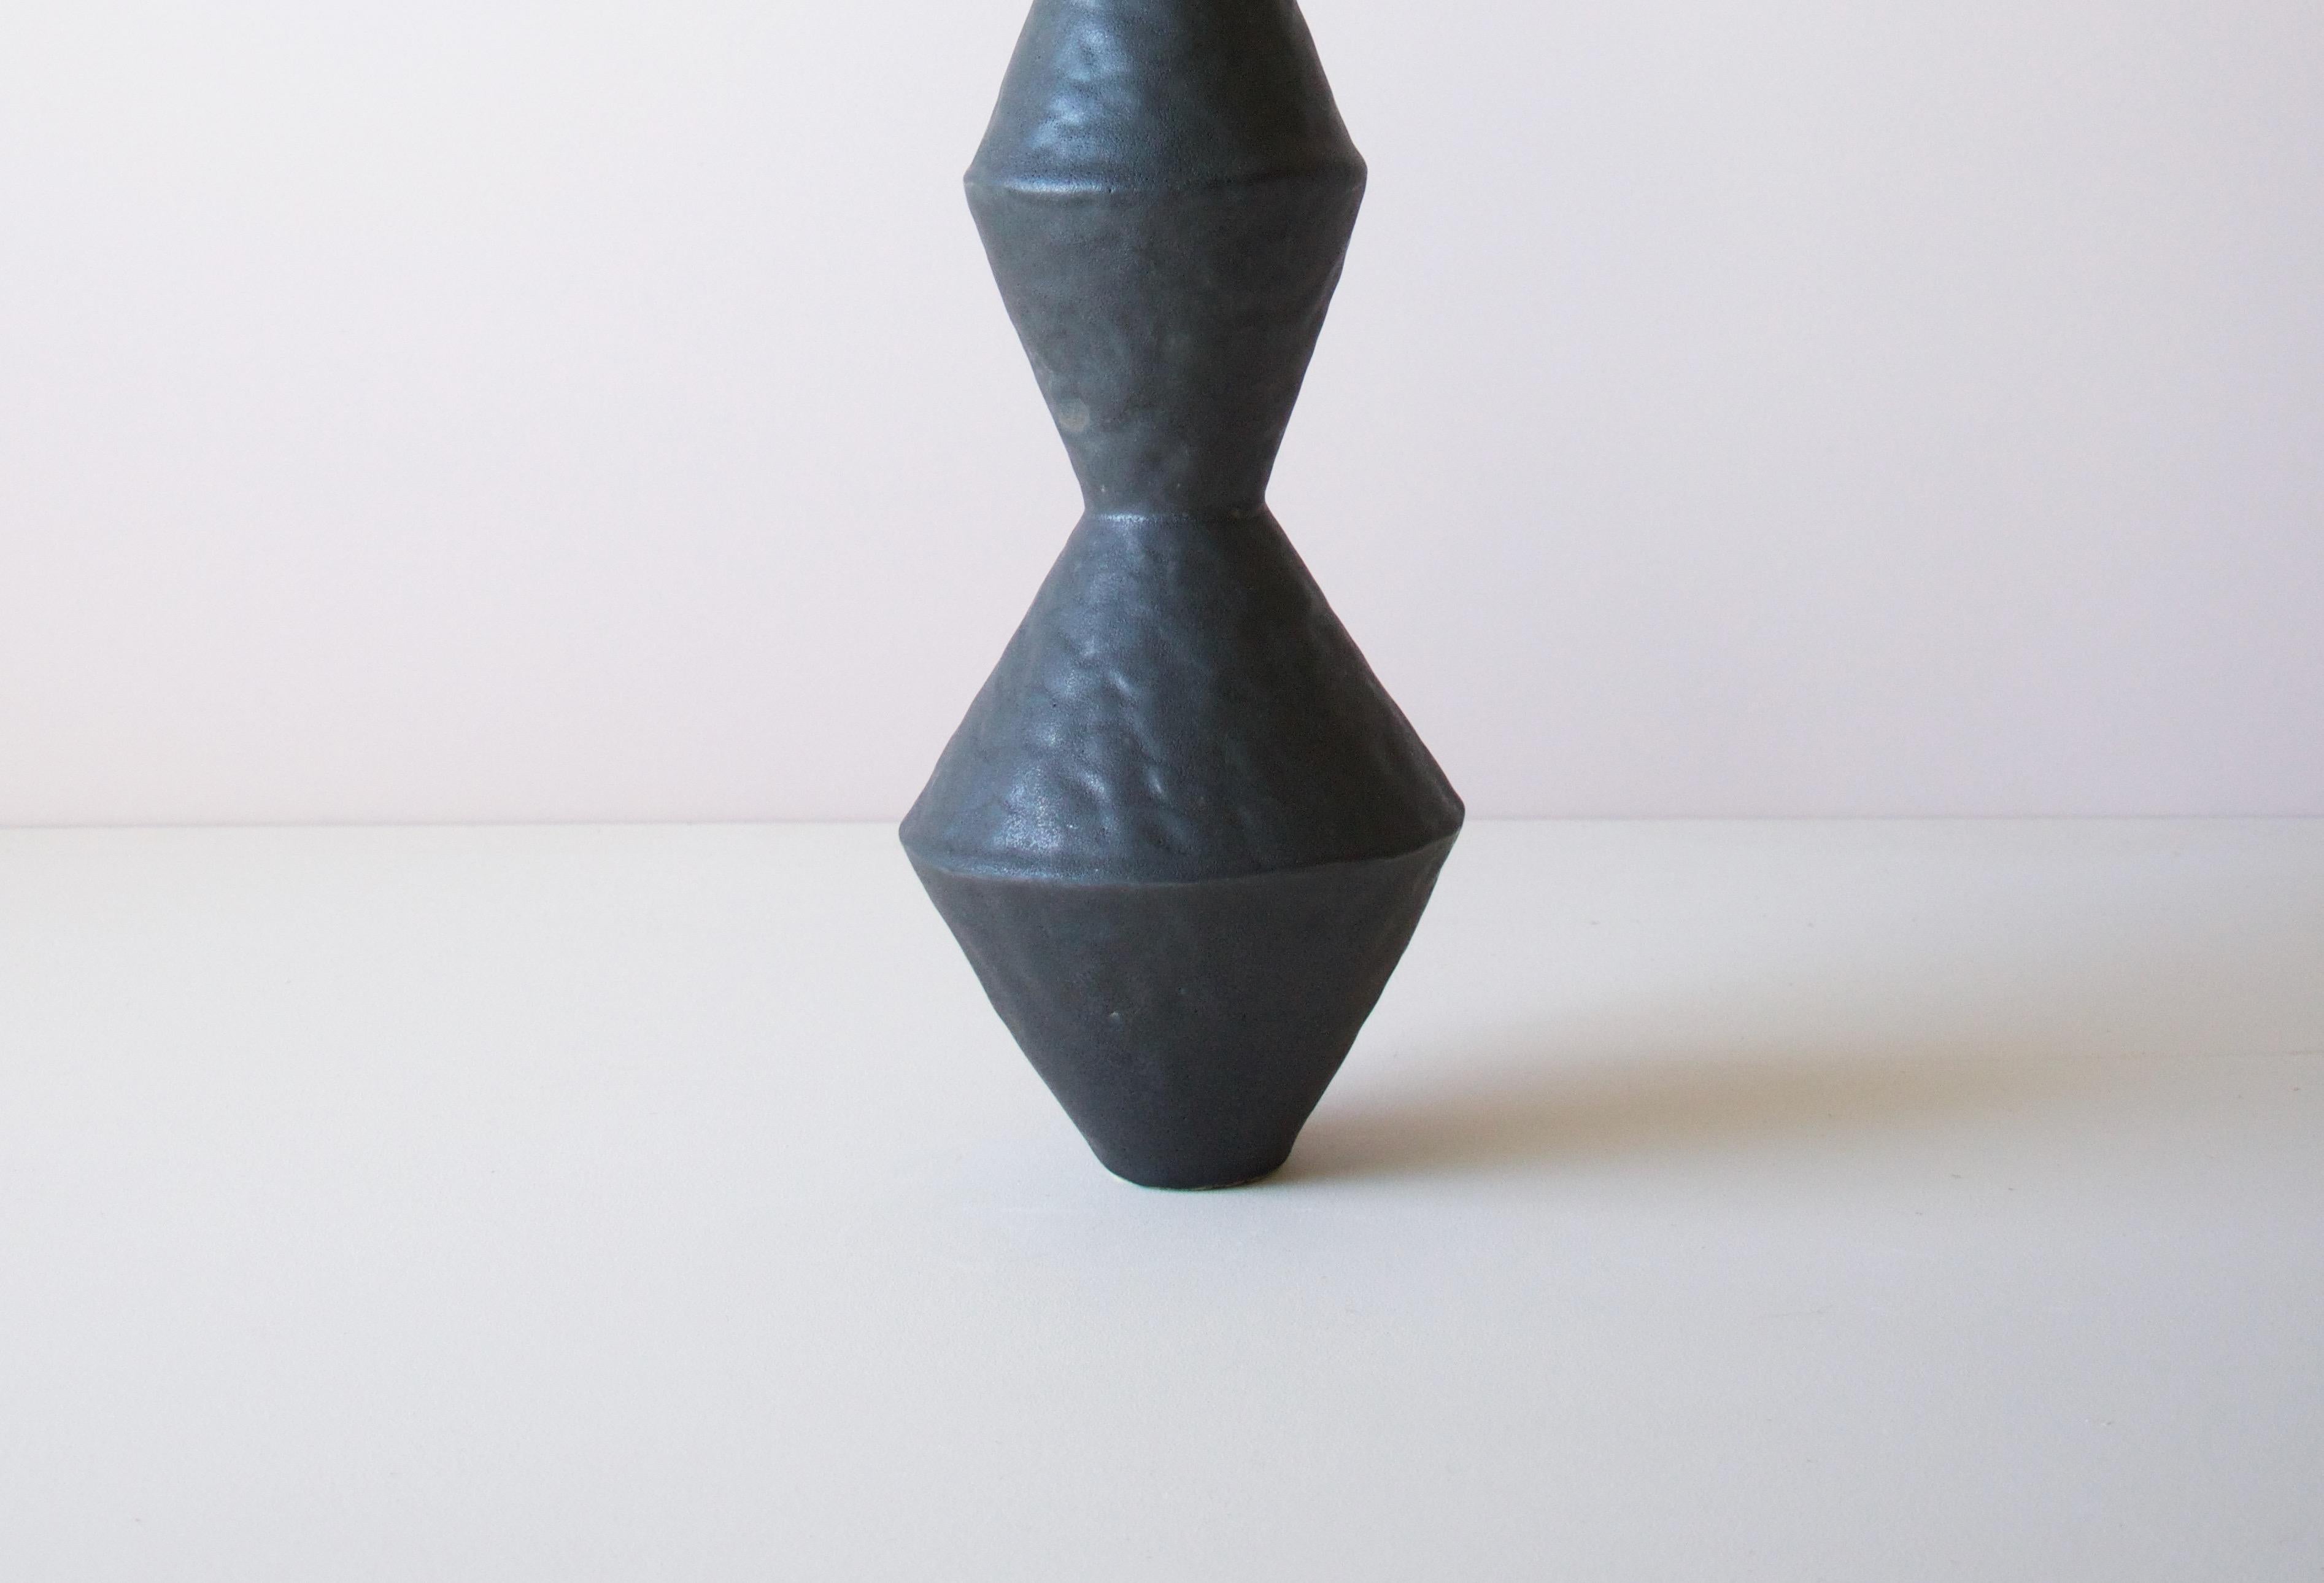 Glazed Giselle Hicks Contemporary Black Ceramic Vase, 2020